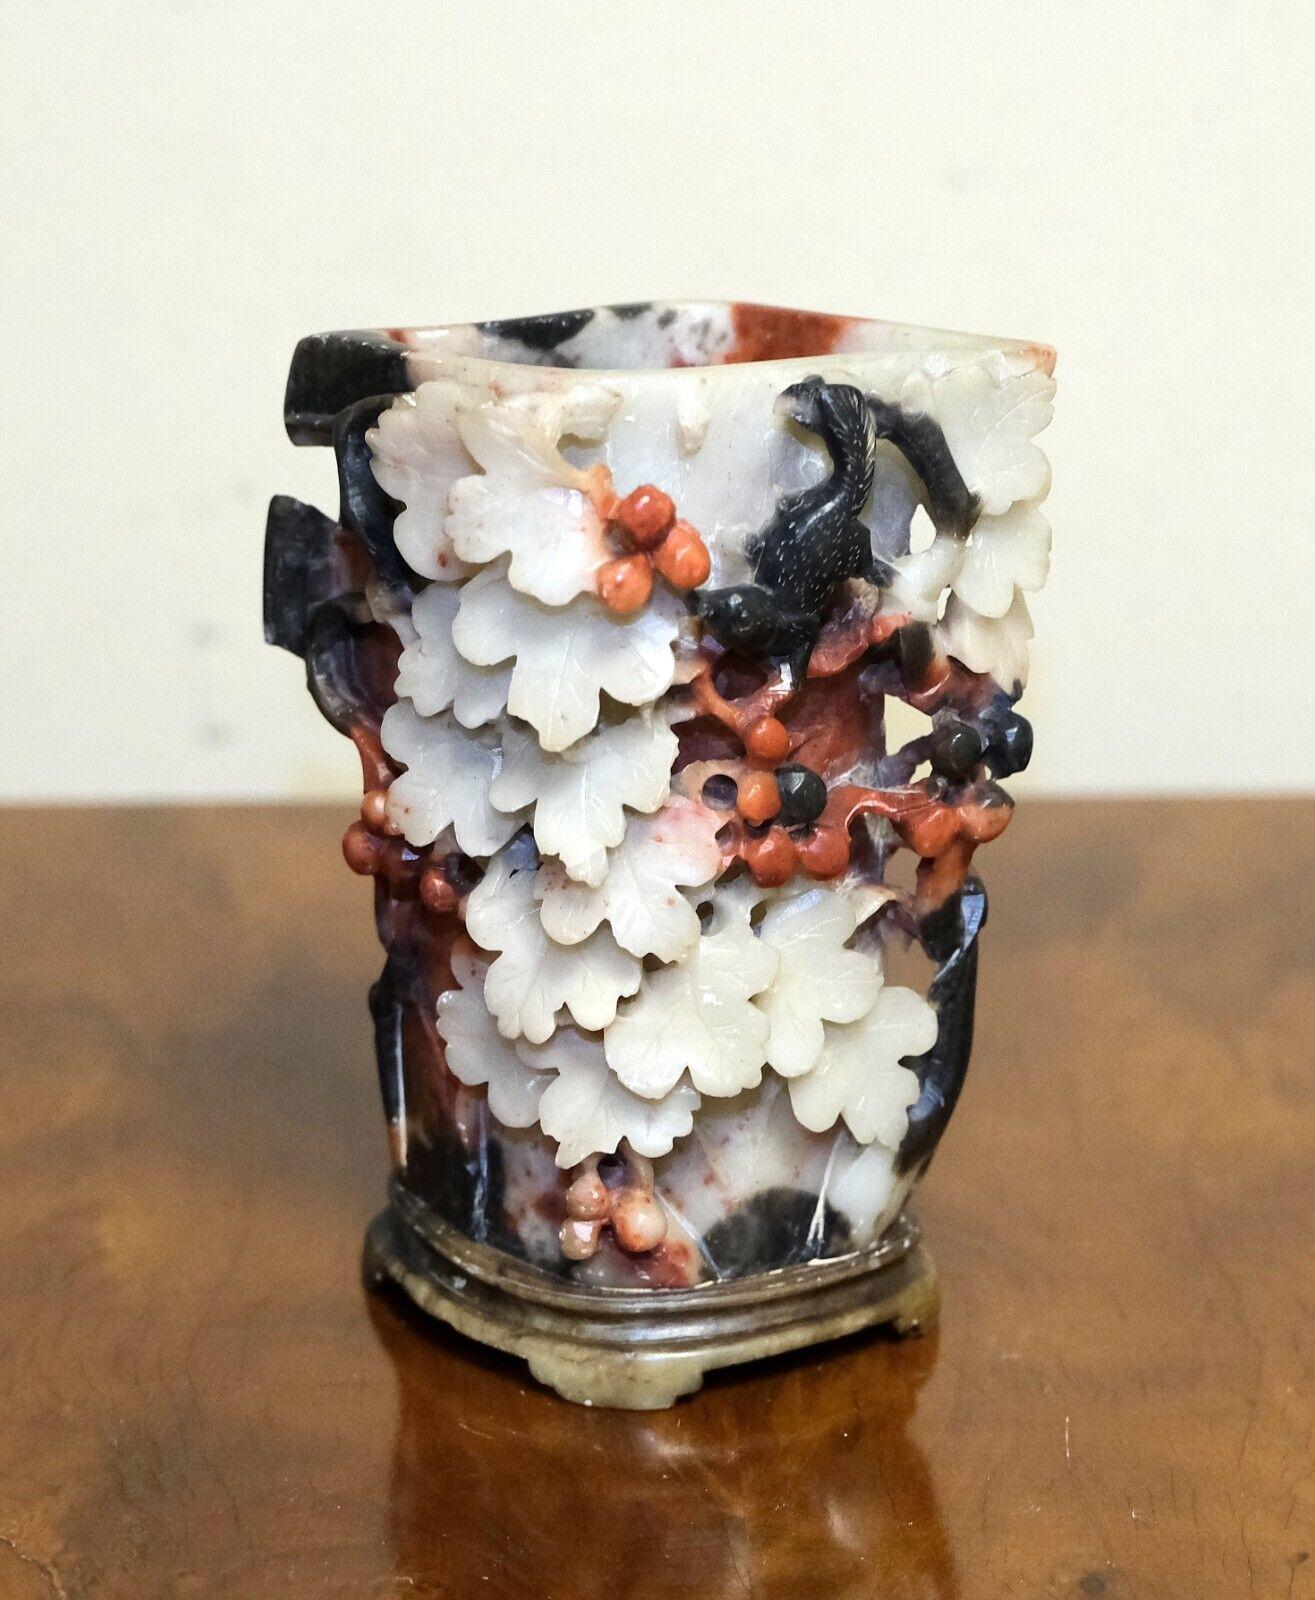 Wir freuen uns, diese schöne kleine chinesische handgeschnitzte Specksteinvase aus dem frühen 20. Jahrhundert zum Verkauf anbieten zu können.

Dies ist ein einzigartiges Element eines chinesischen Hand geschnitzt Vase, mit einer Szene mit